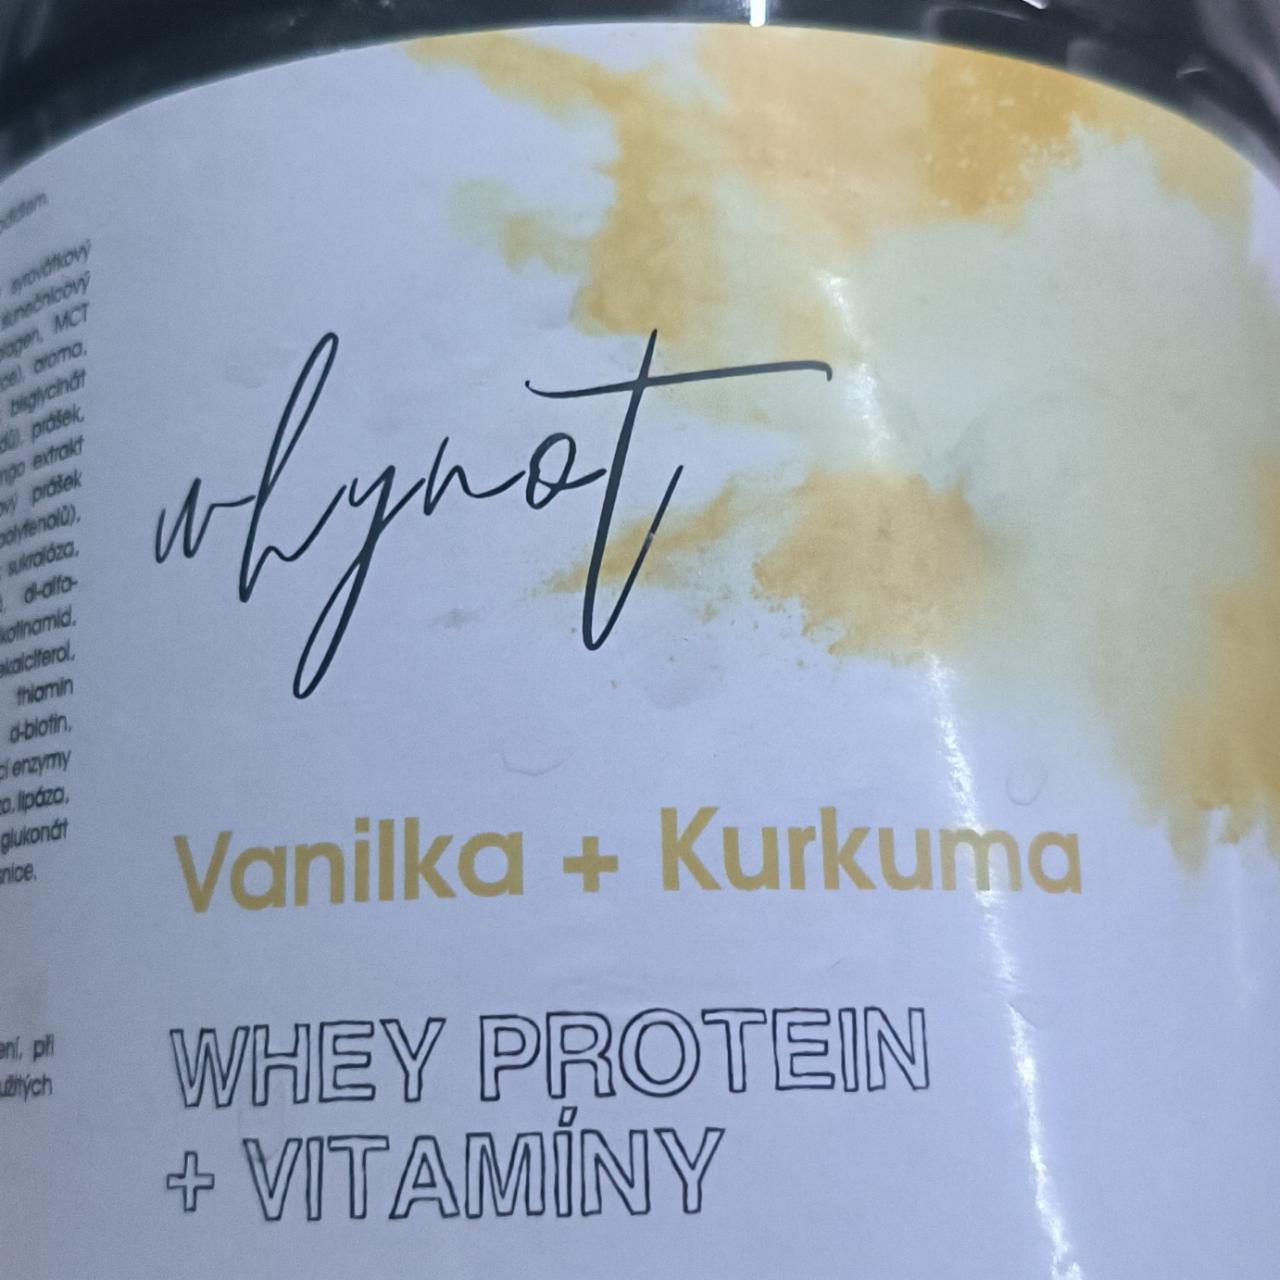 Fotografie - Whey protein + vitamíny Vanilka + Kurkuma WhyNot